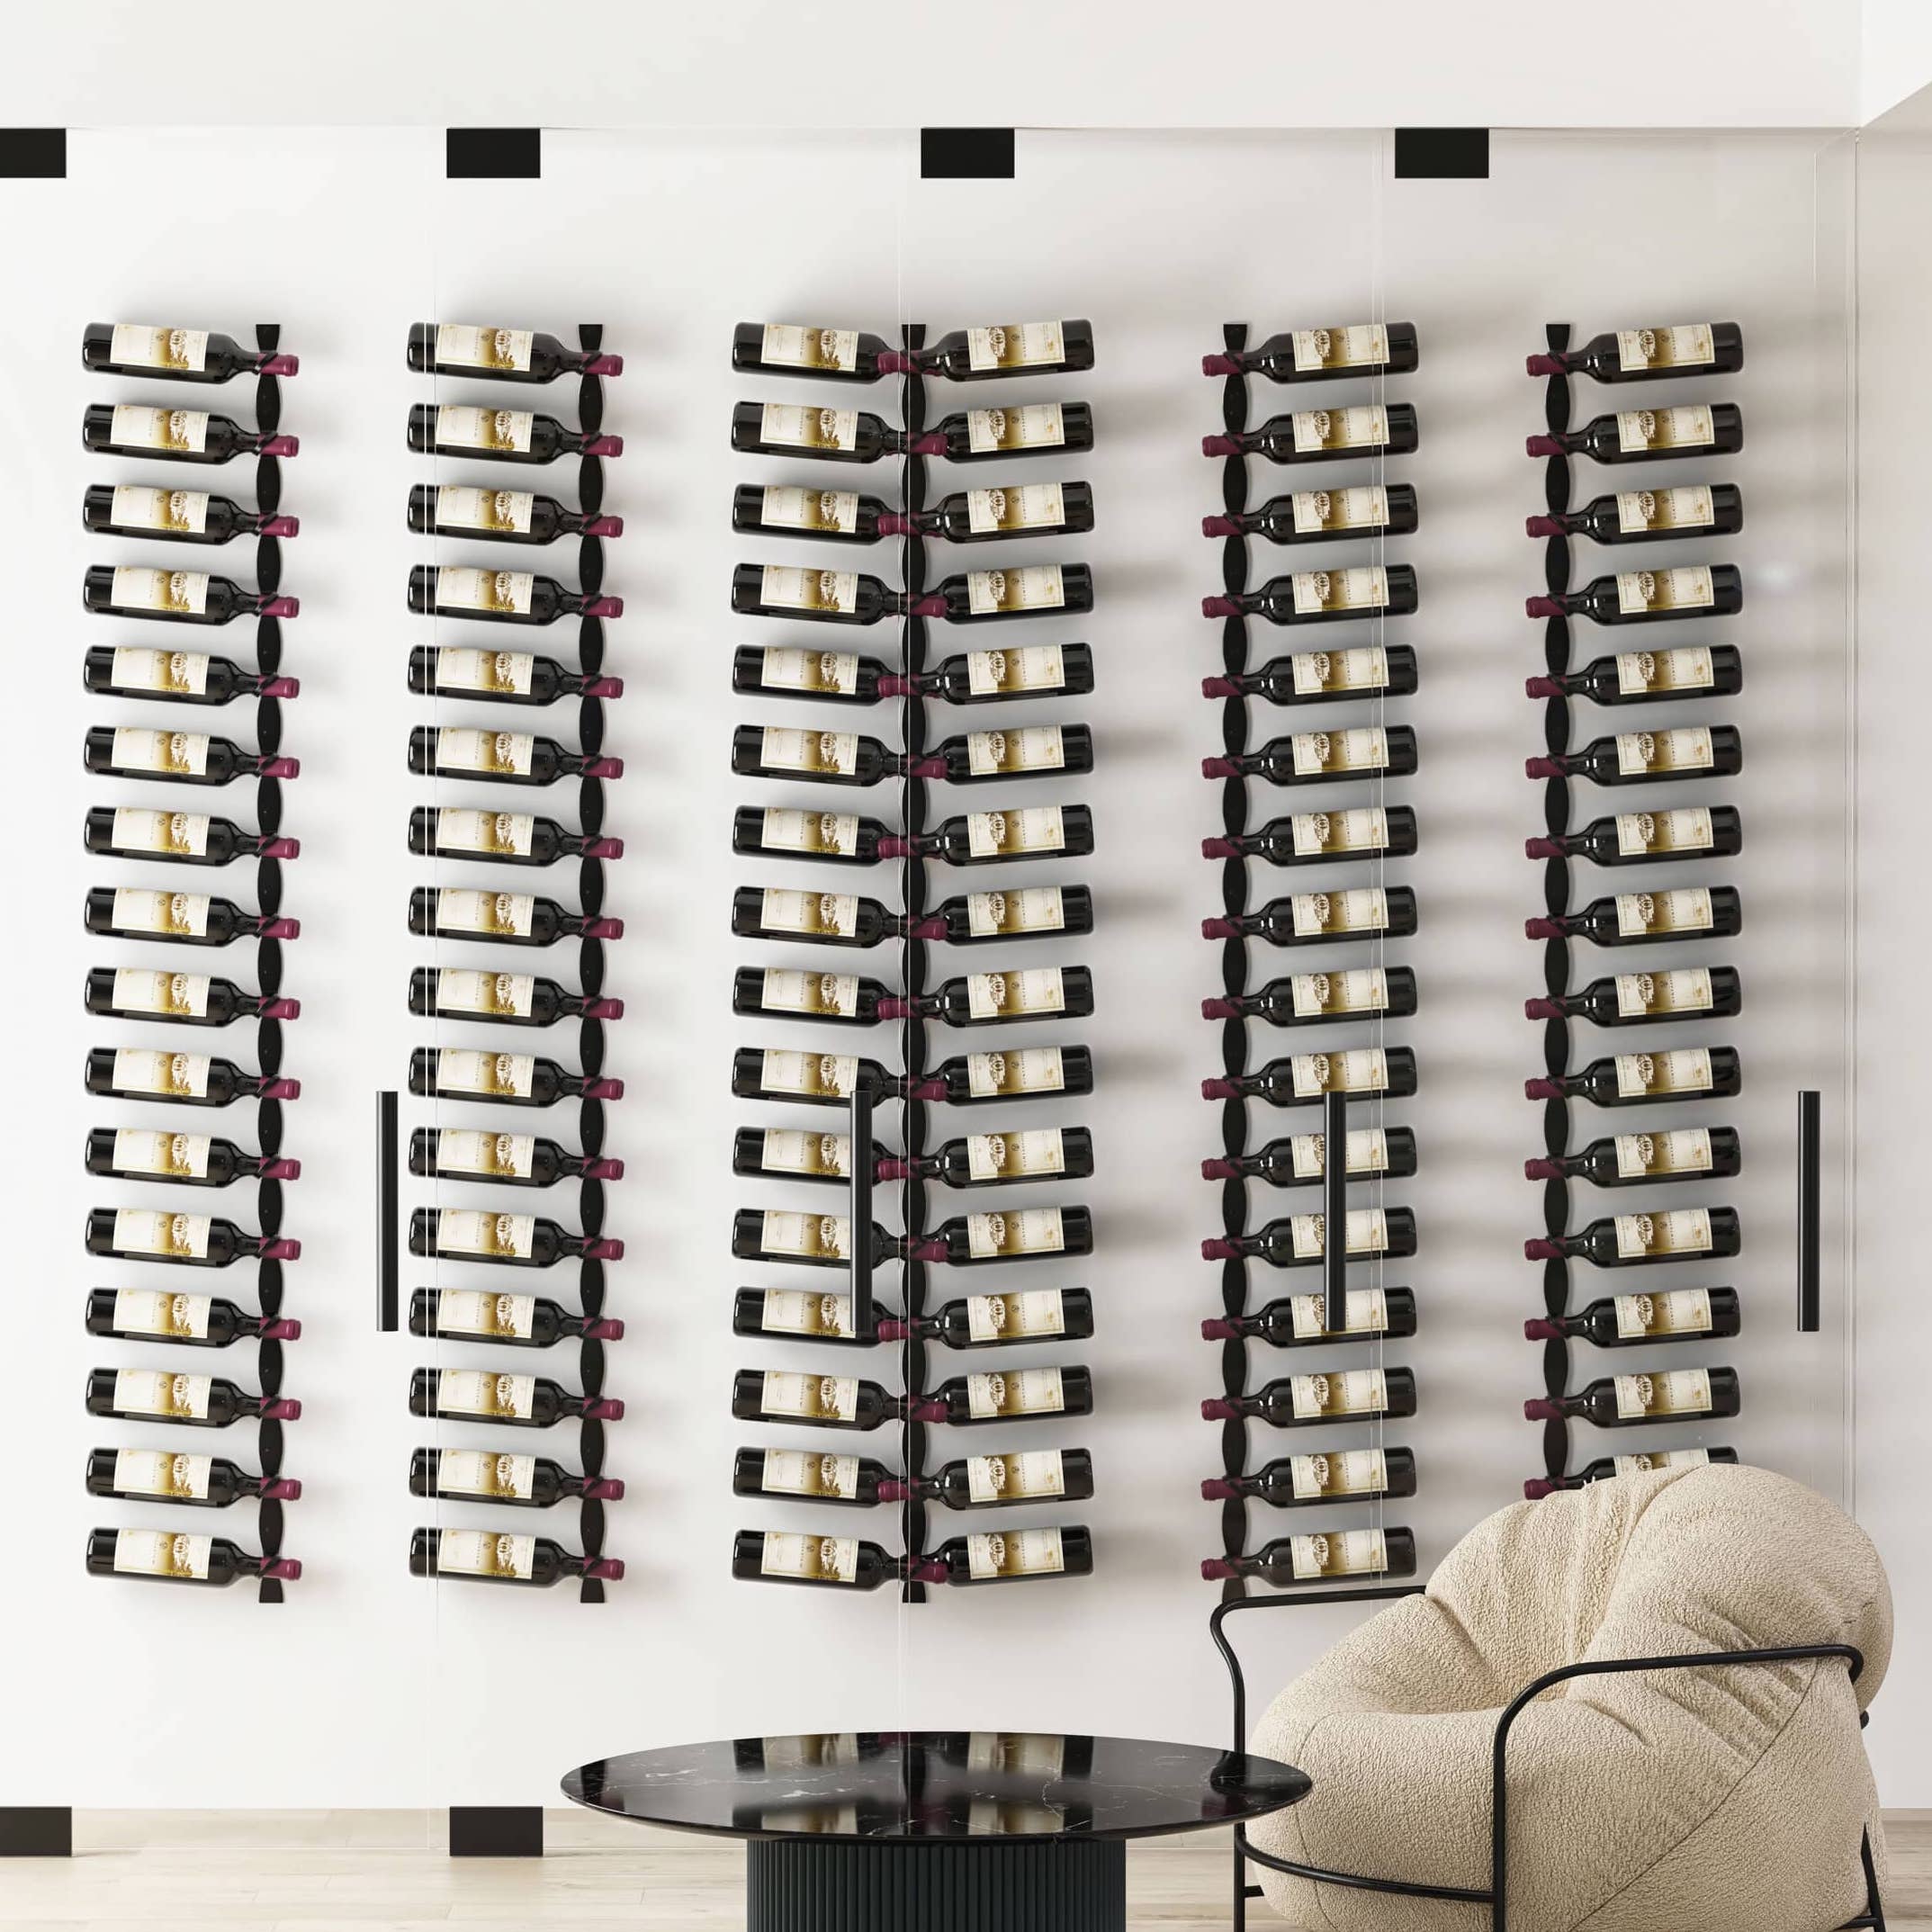 helix dual 20 wall mounted metal wine rack wall